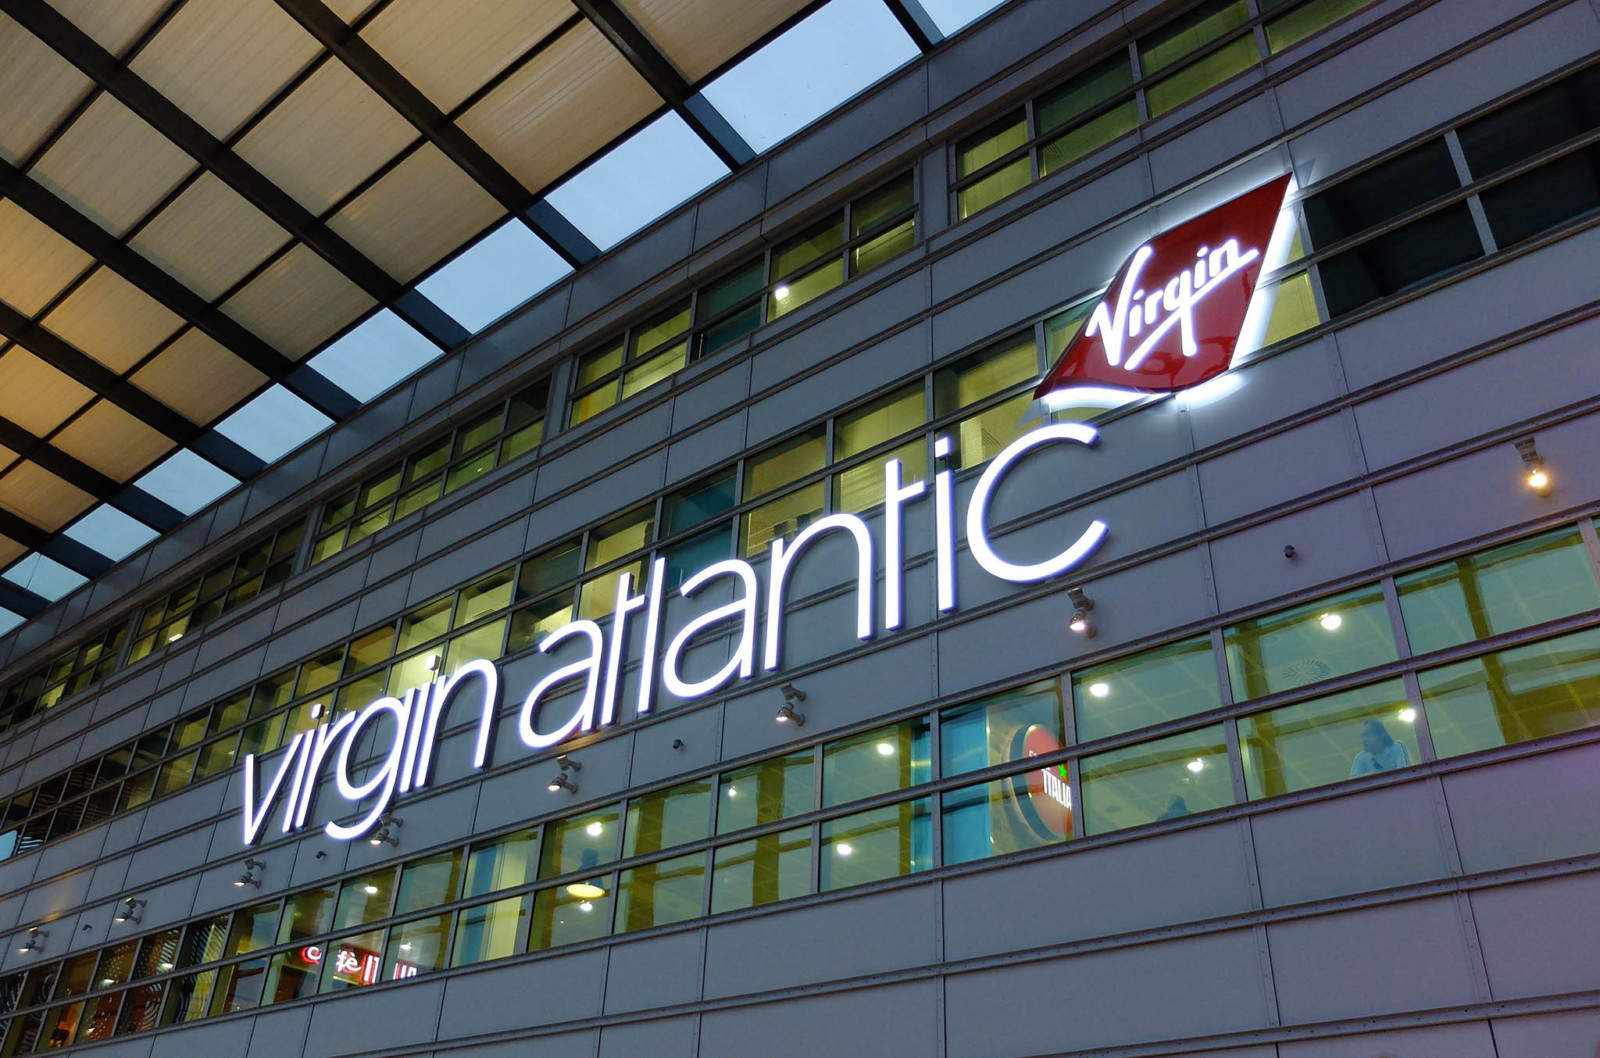 Virgin Atlantic image